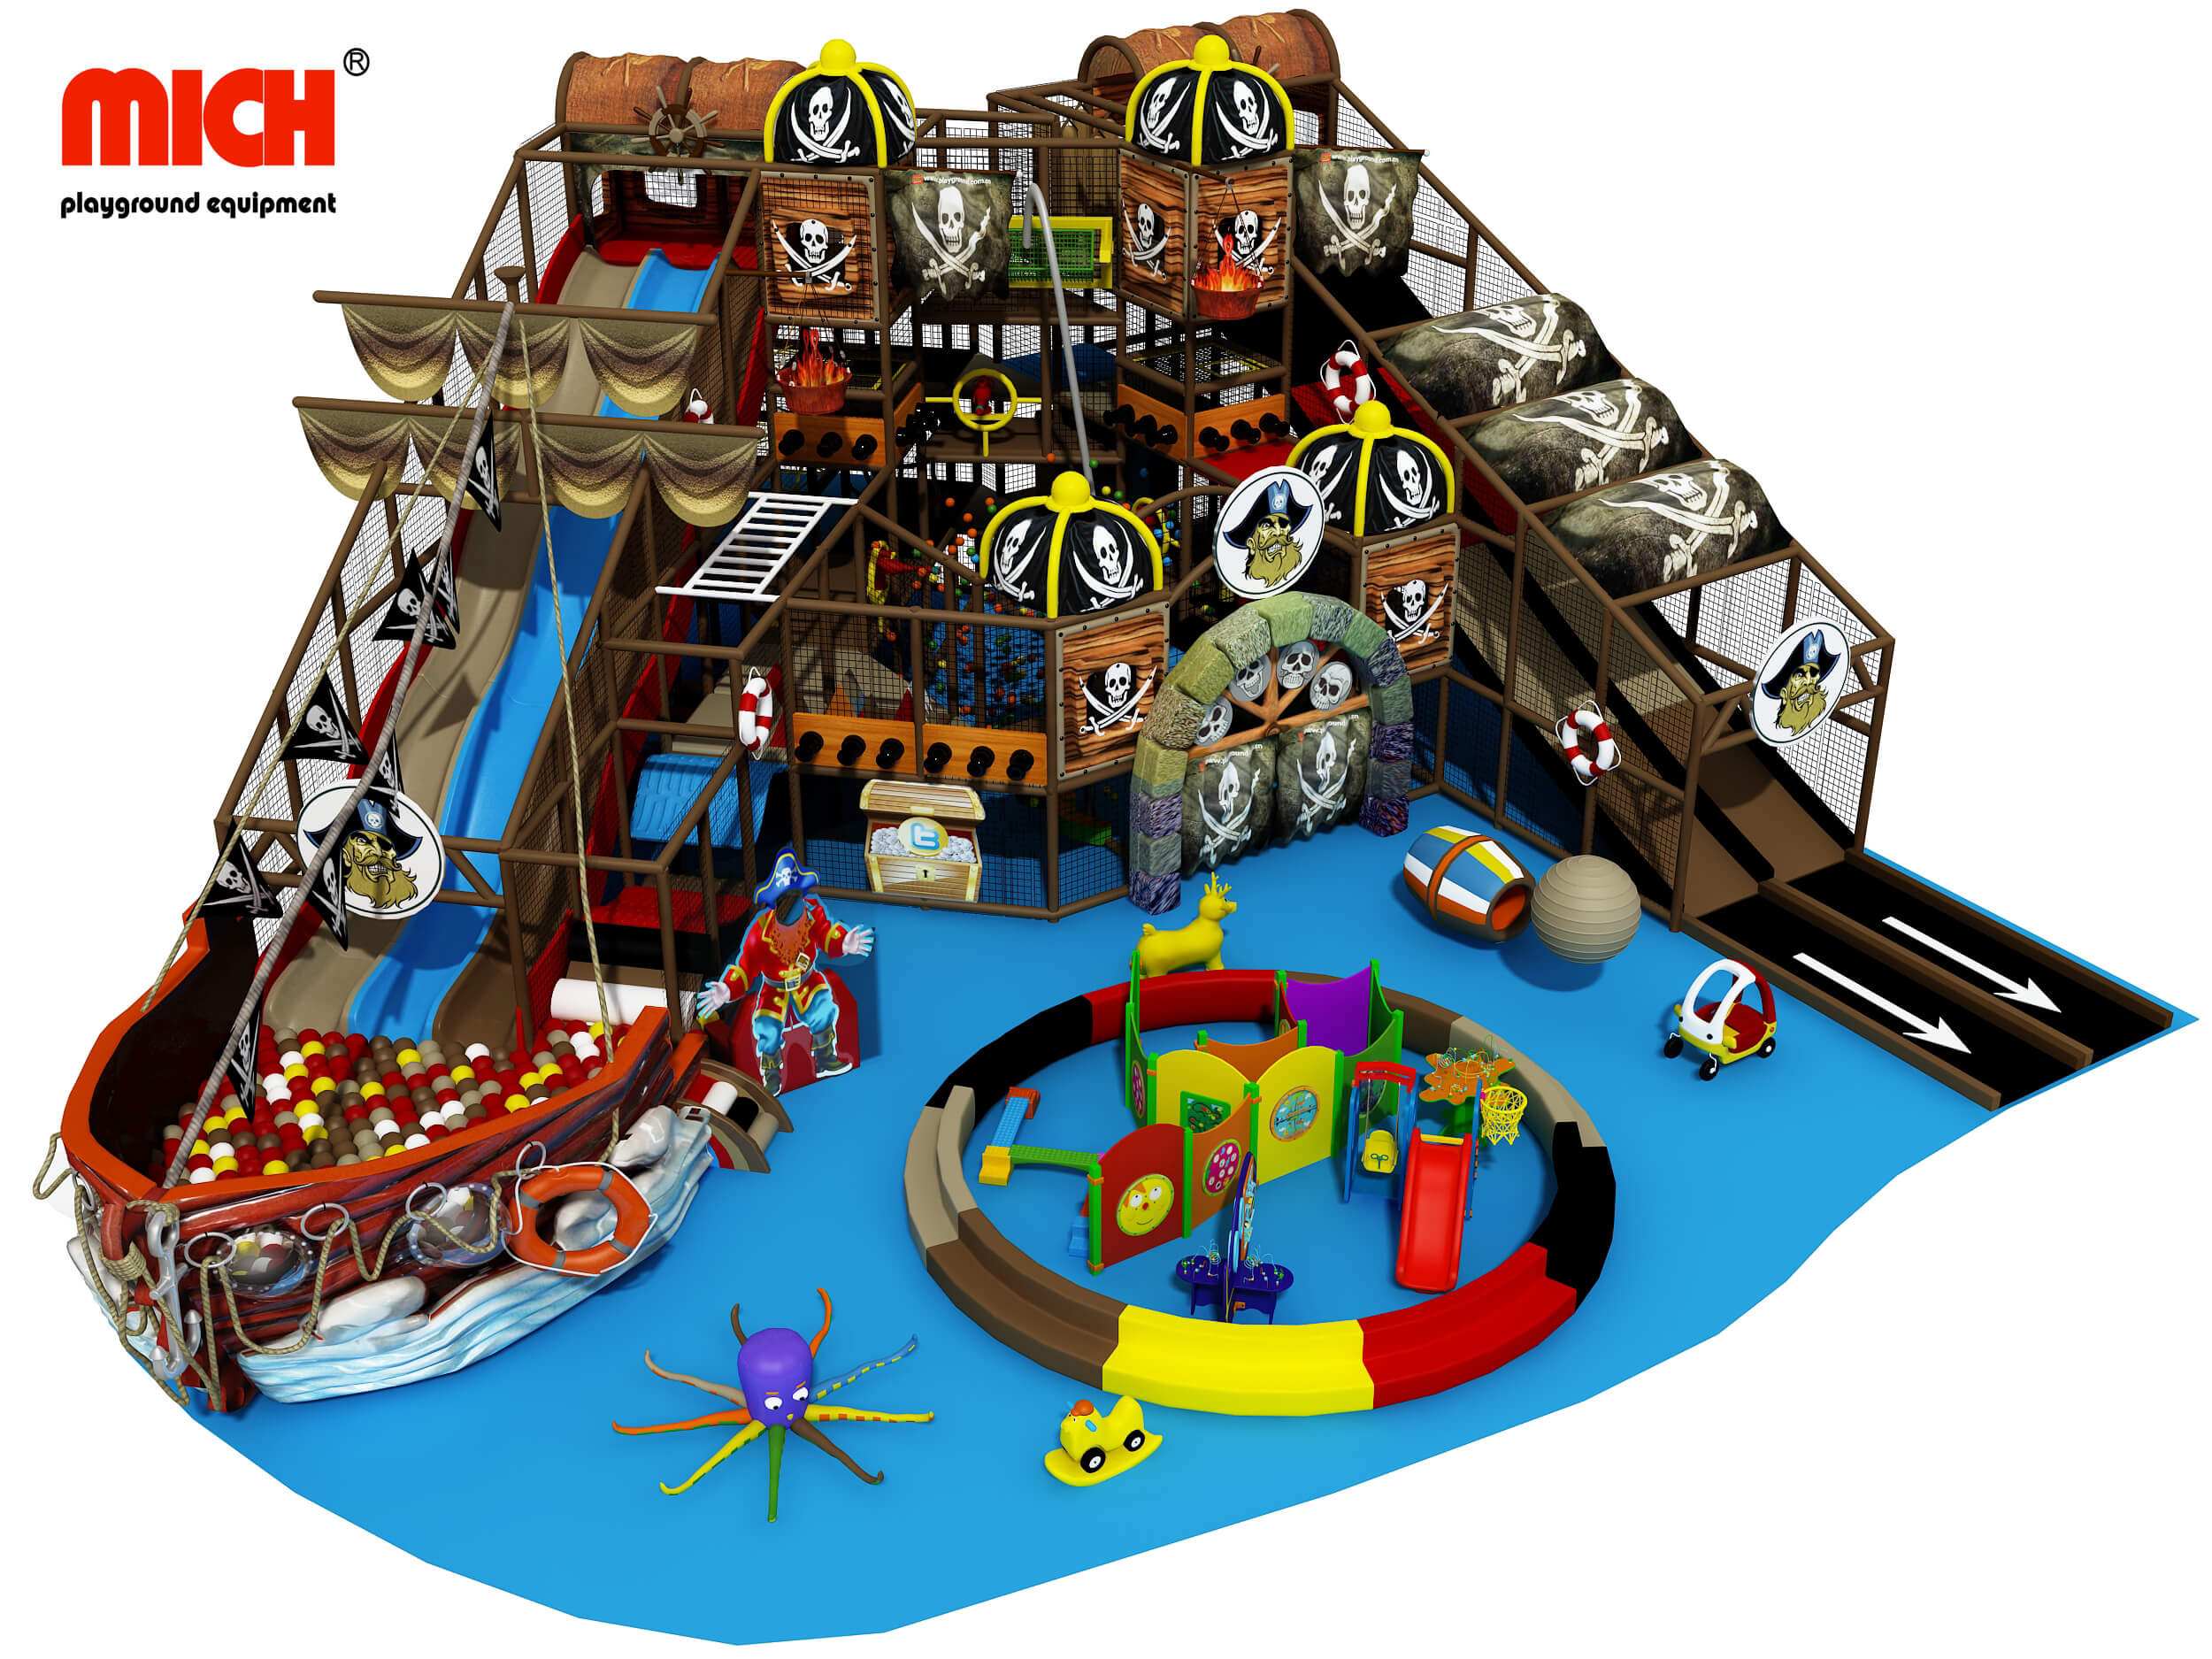 Классическая пиратская тематическая детская мягкая игровая площадка